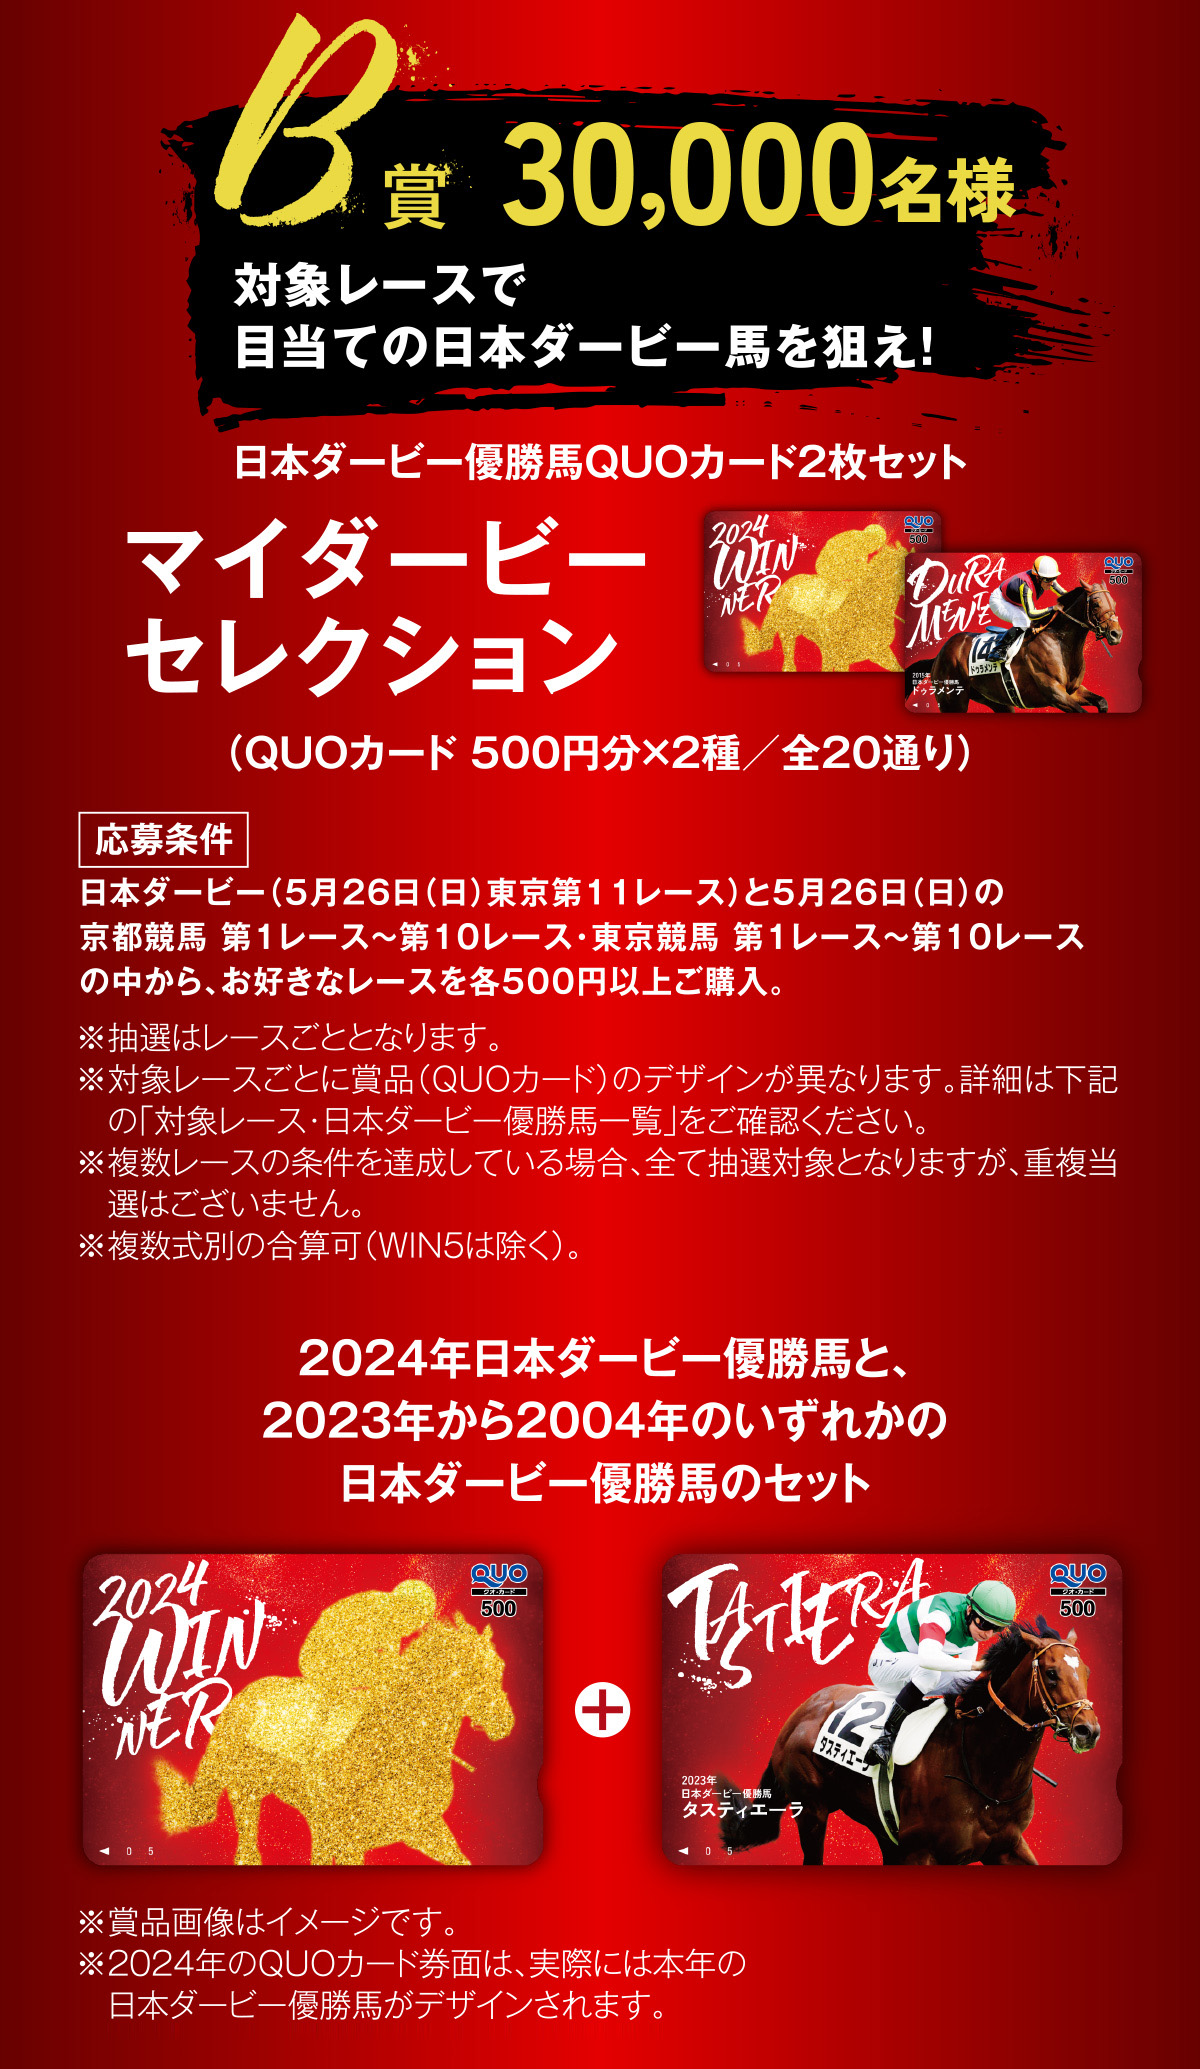 JRA日本ダービーキャンペーン | JRA